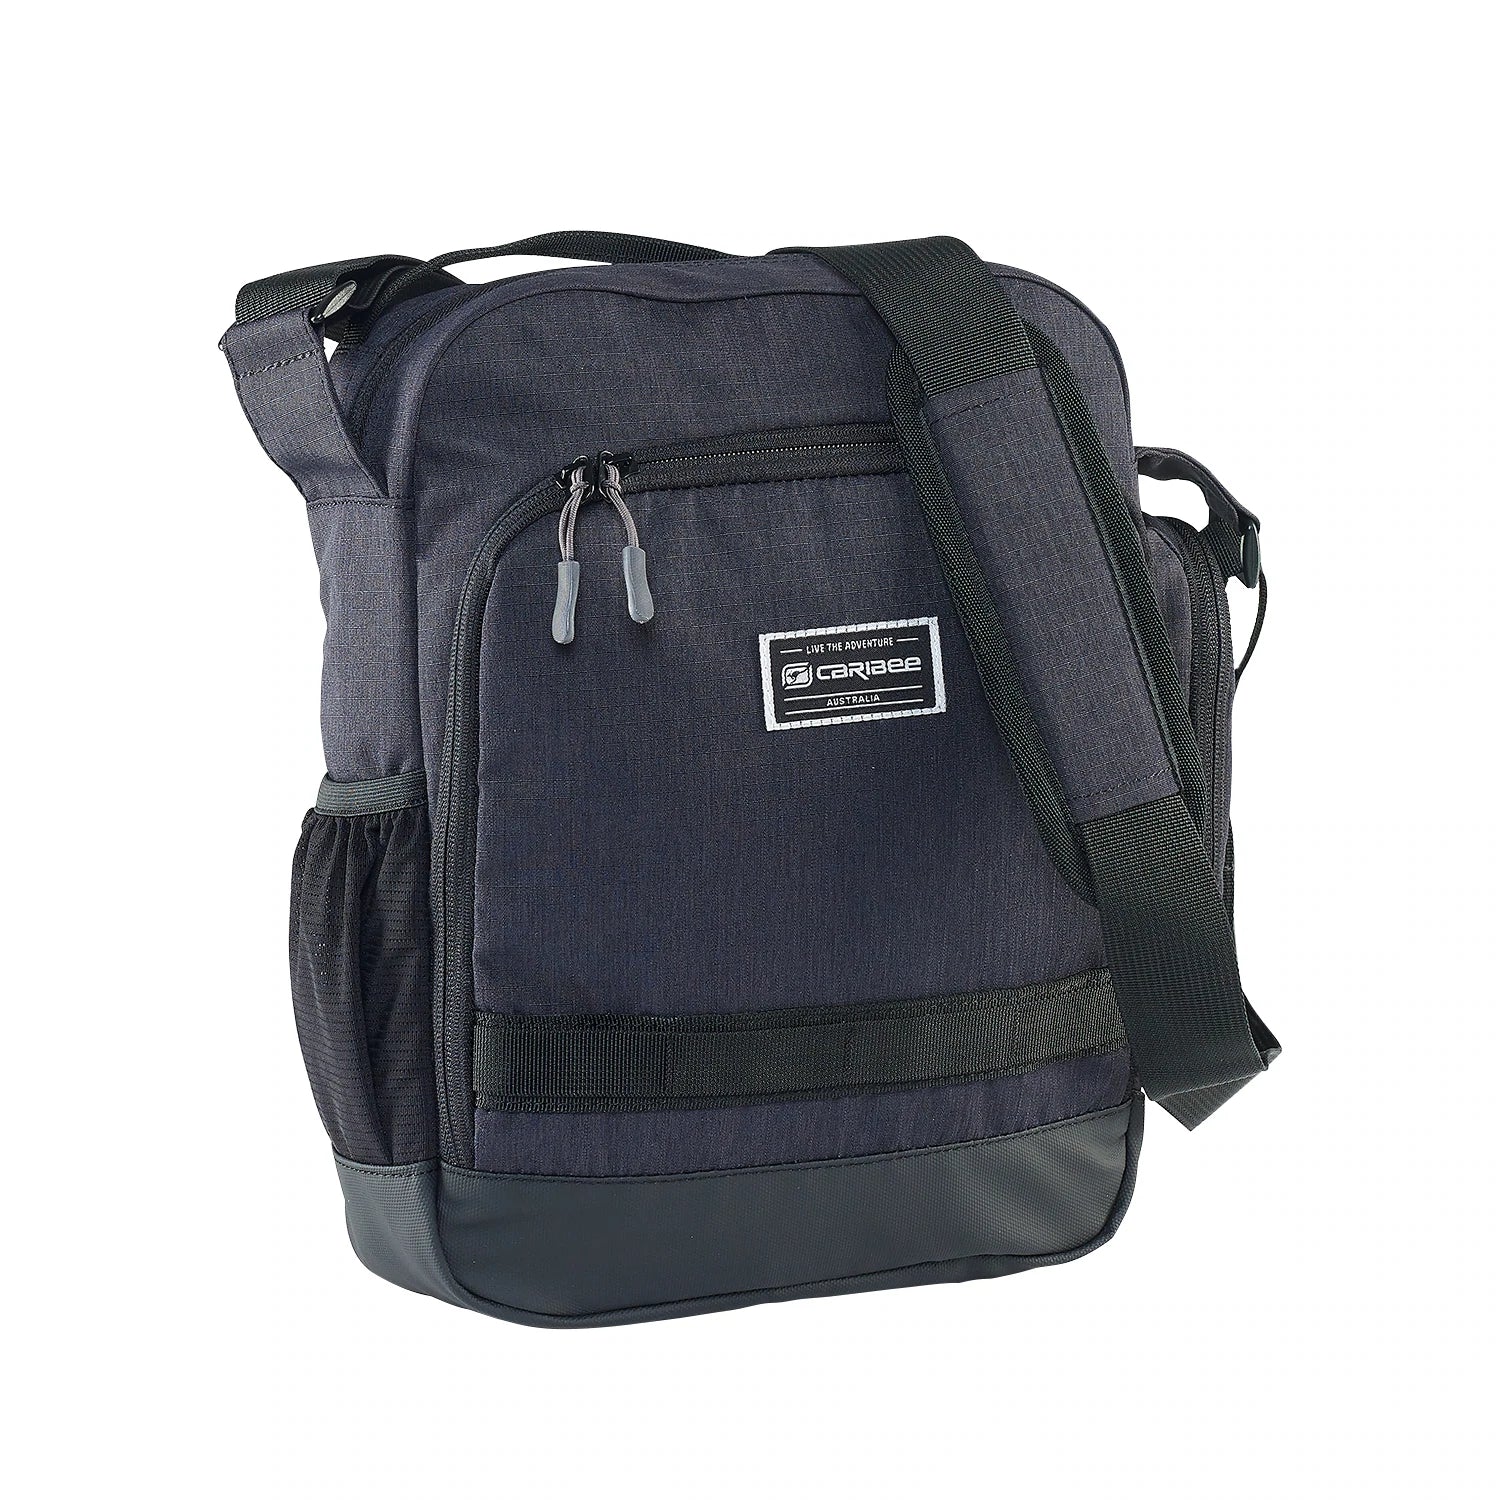 Caribee - Departure Bag 2.0 Travel Shoulder Bag-1